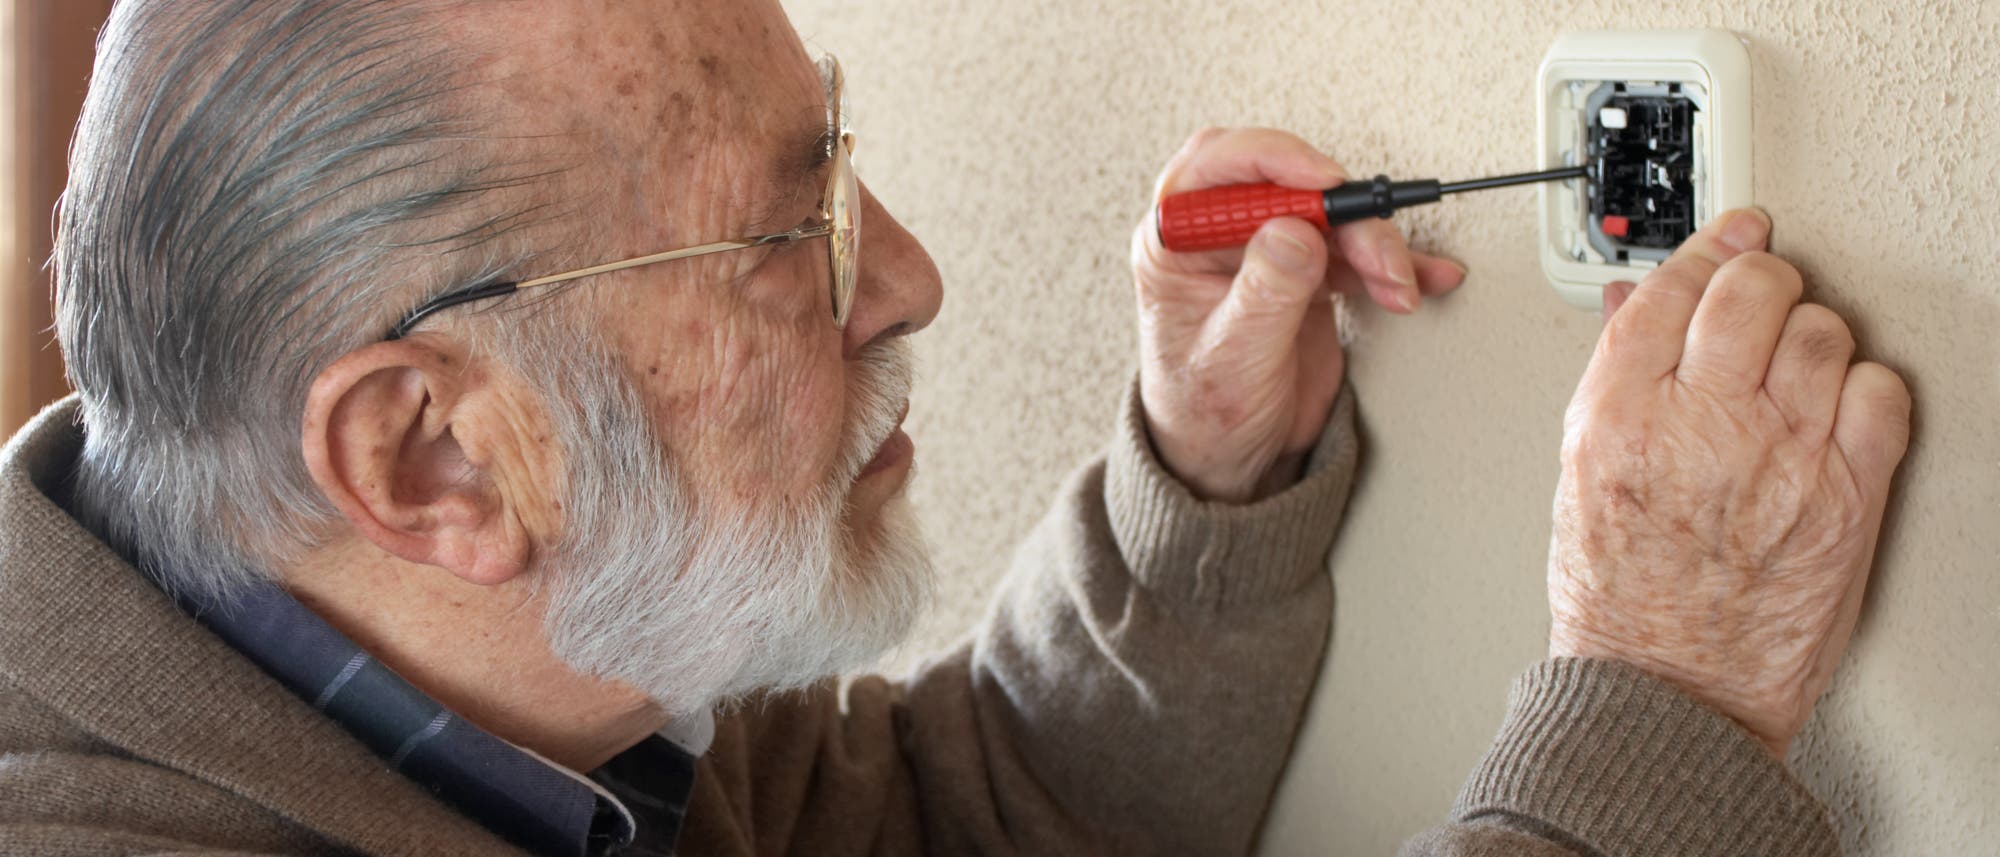 Ein älterer Herr steckt einen Schraubenzieher in eine offene Steckdose